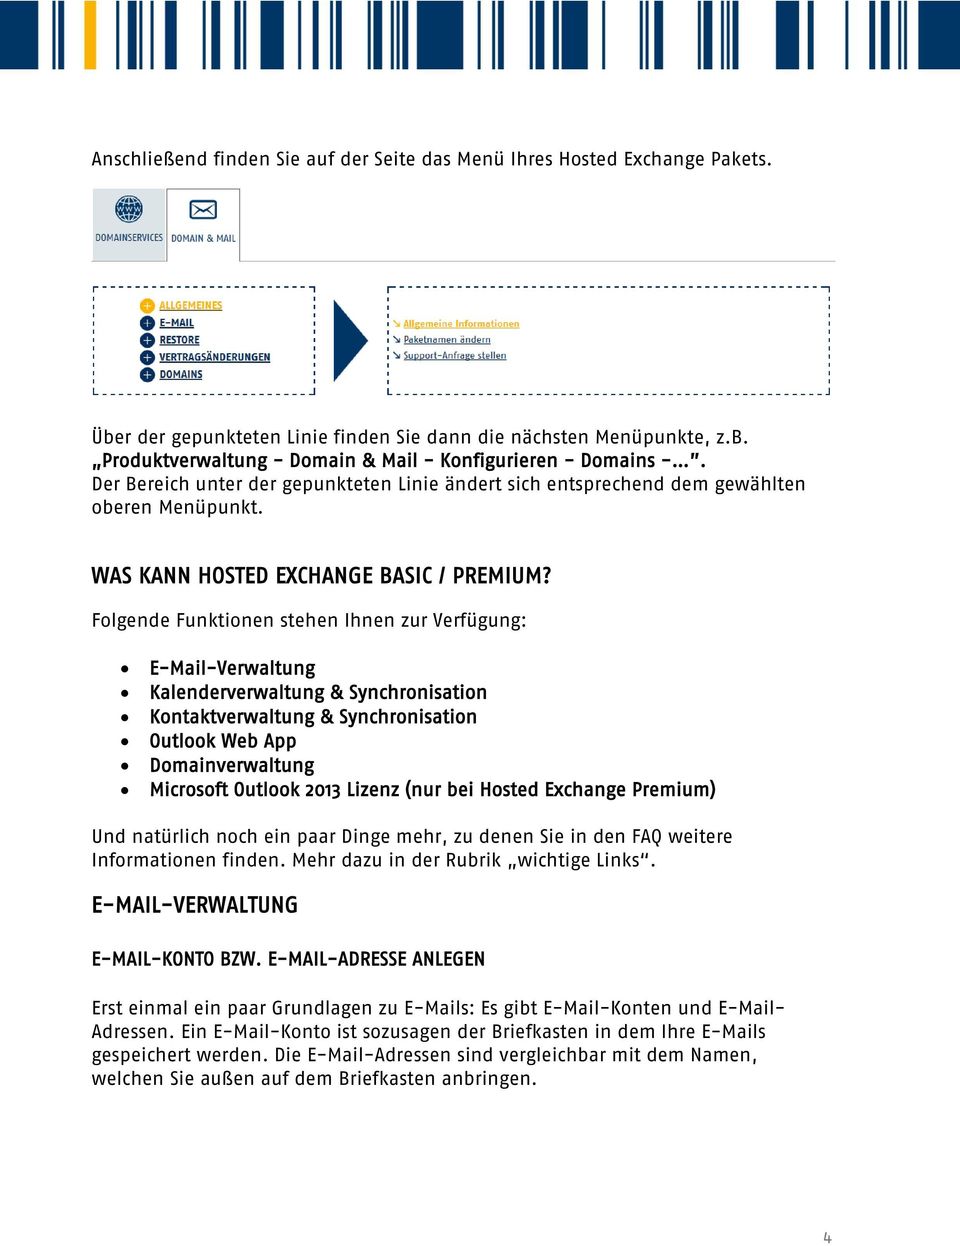 Folgende Funktionen stehen Ihnen zur Verfügung: E-Mail-Verwaltung Kalenderverwaltung & Synchronisation Kontaktverwaltung & Synchronisation Outlook Web App Domainverwaltung Microsoft Outlook 2013